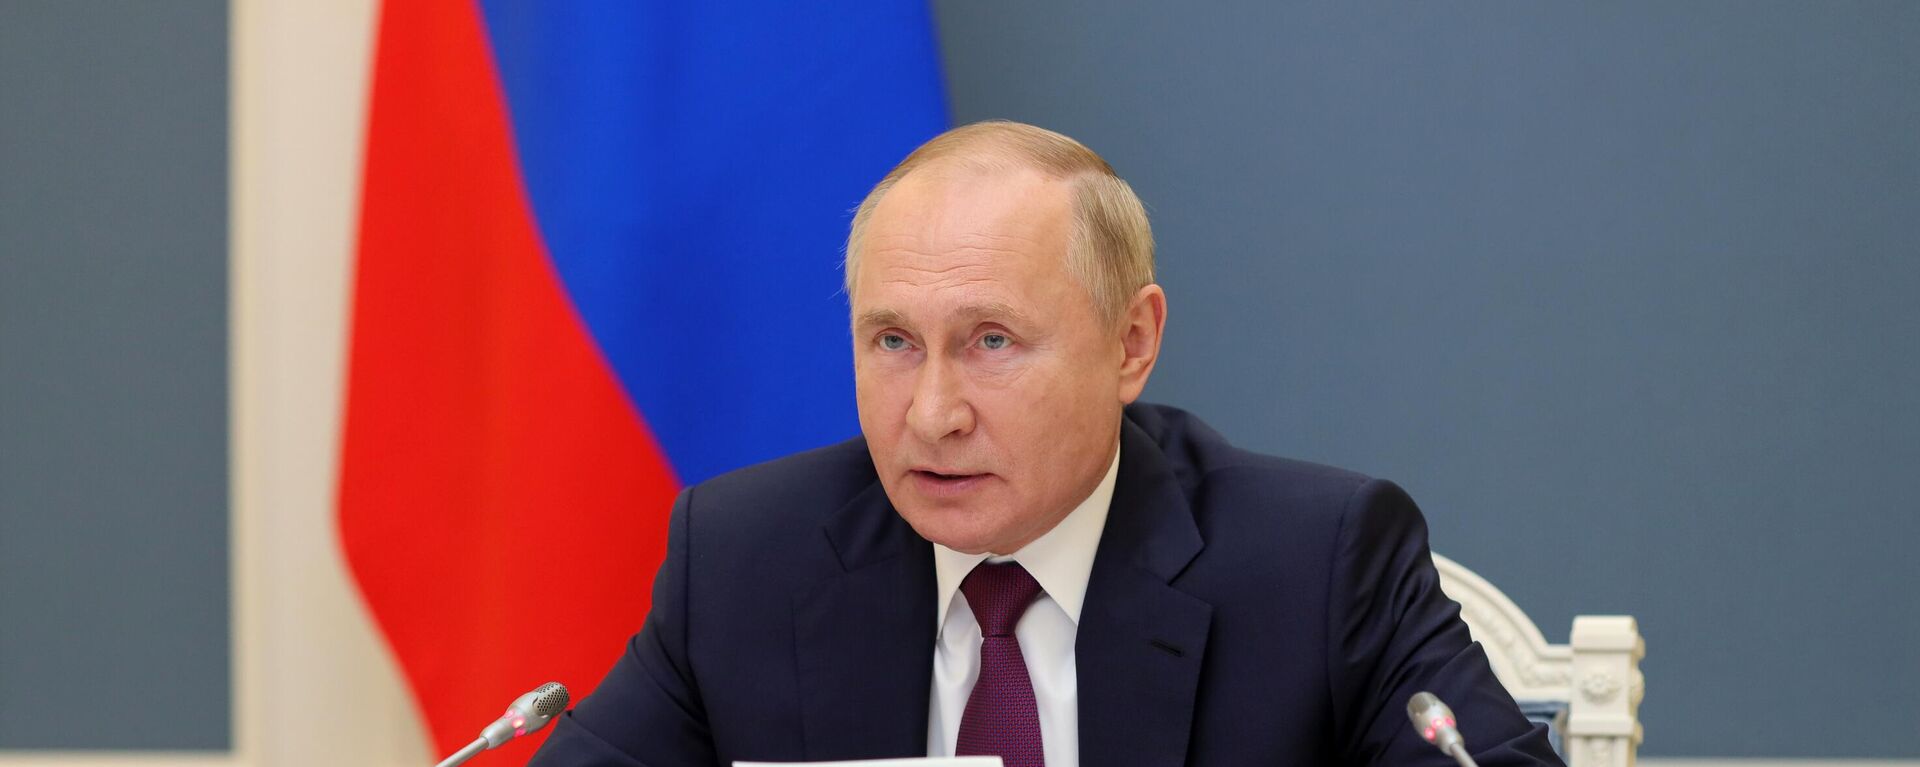 Президент РФ В. Путин принял участие в саммите Группы двадцати - Sputnik Узбекистан, 1920, 22.11.2021